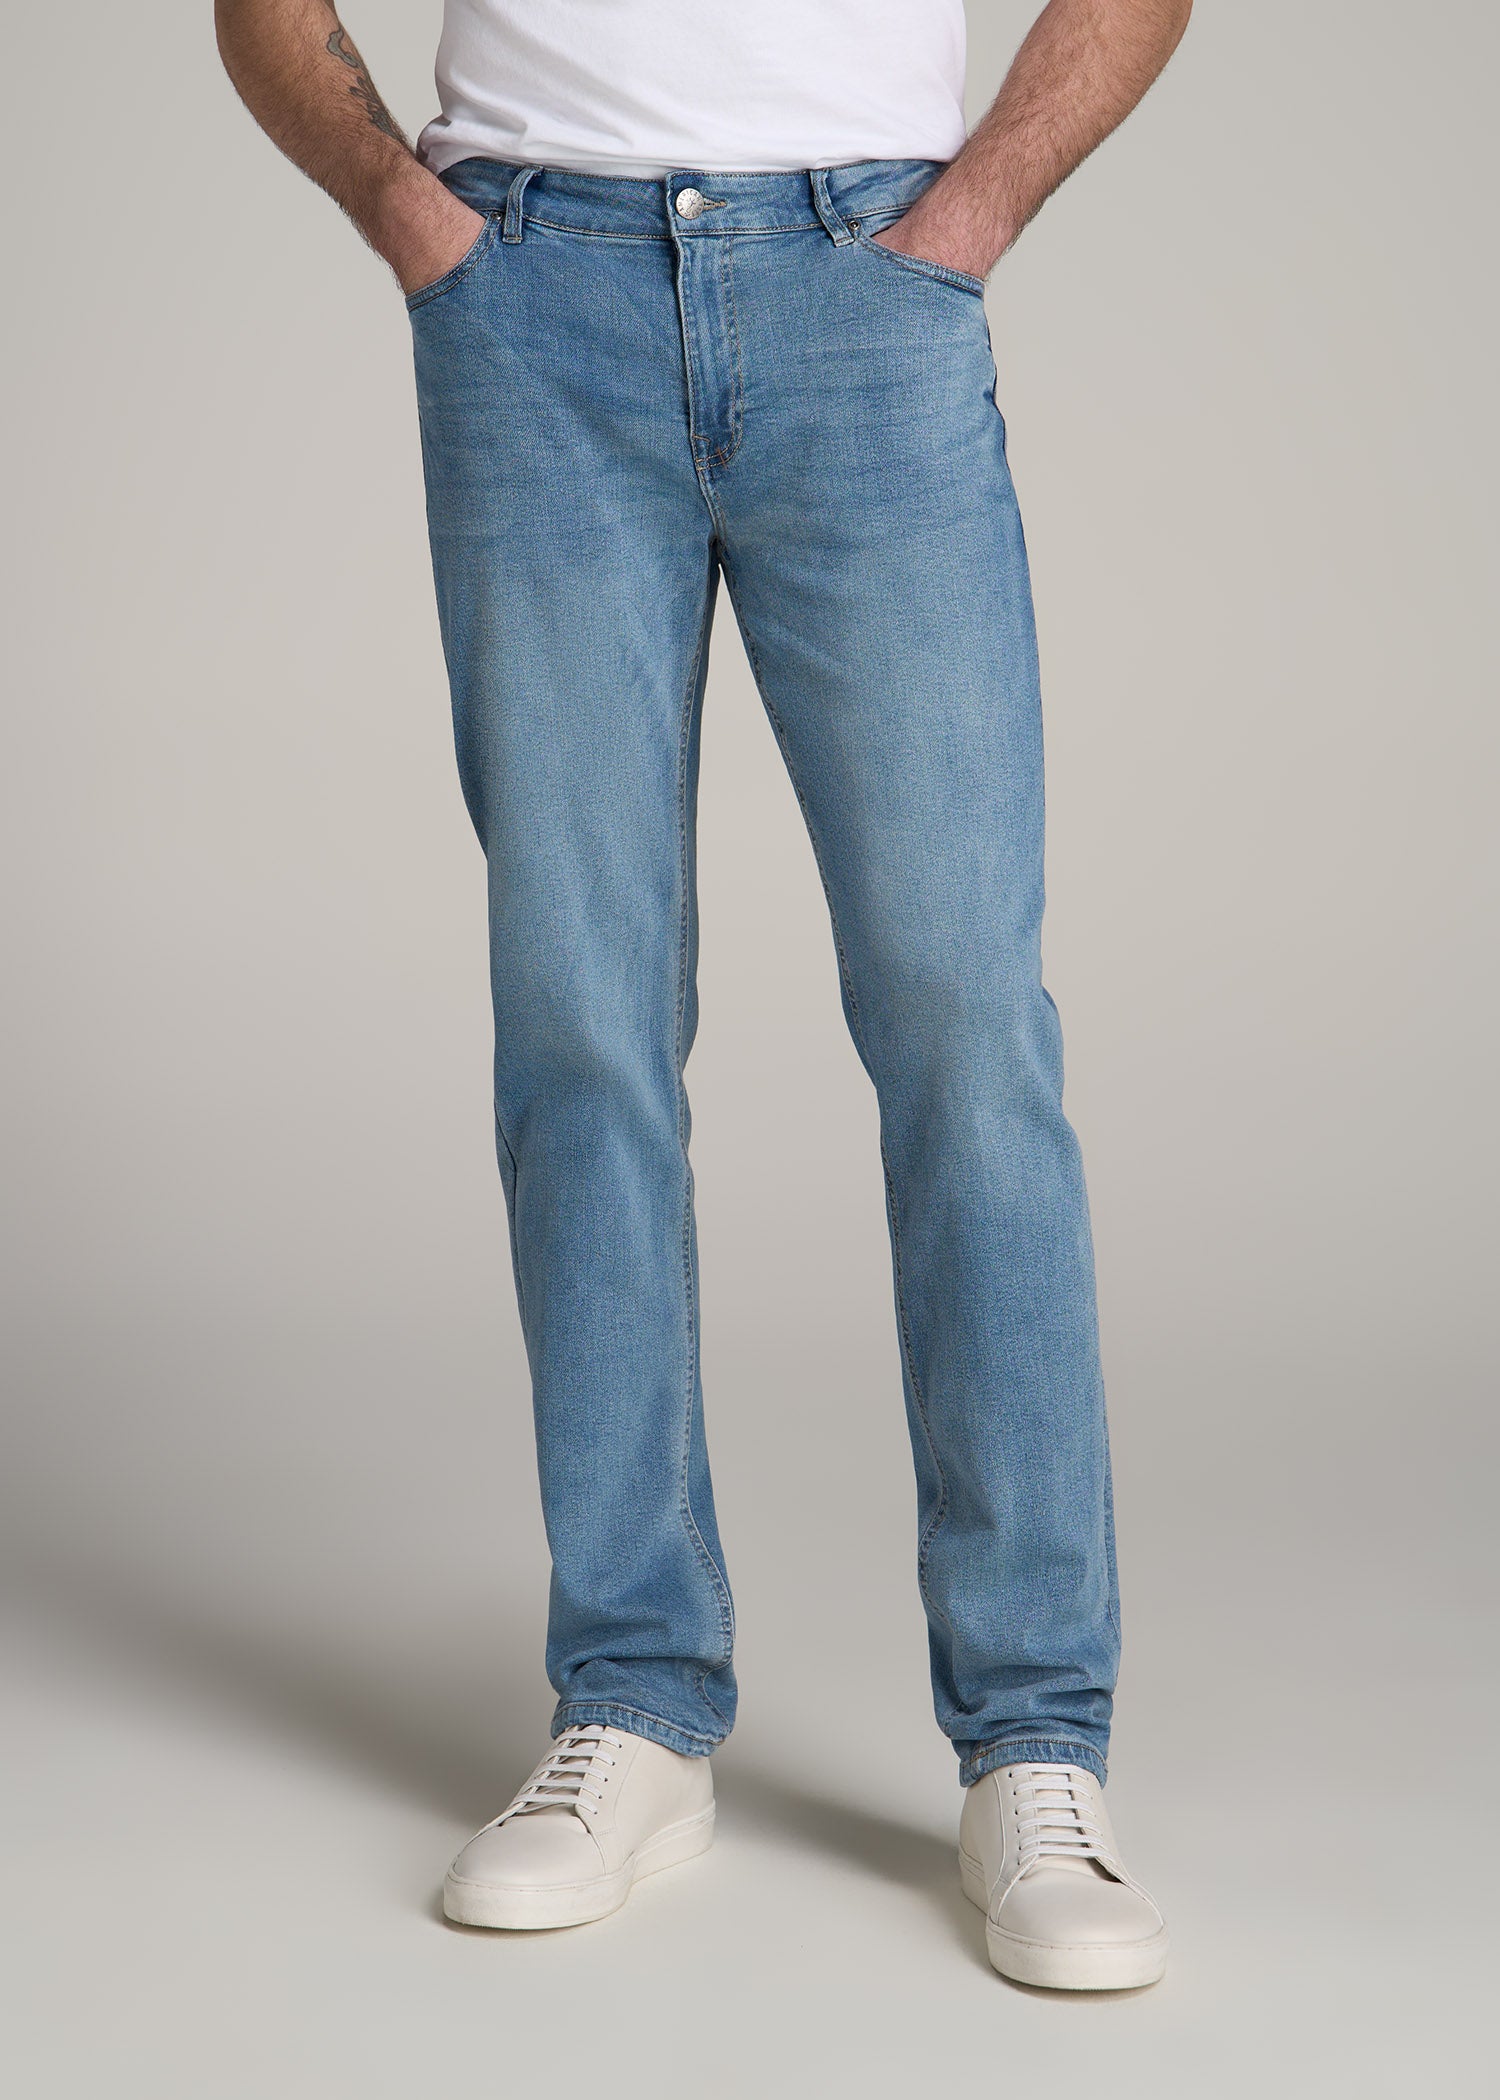 38 Inch Waist Jeans, Plus Size Men's Jeans